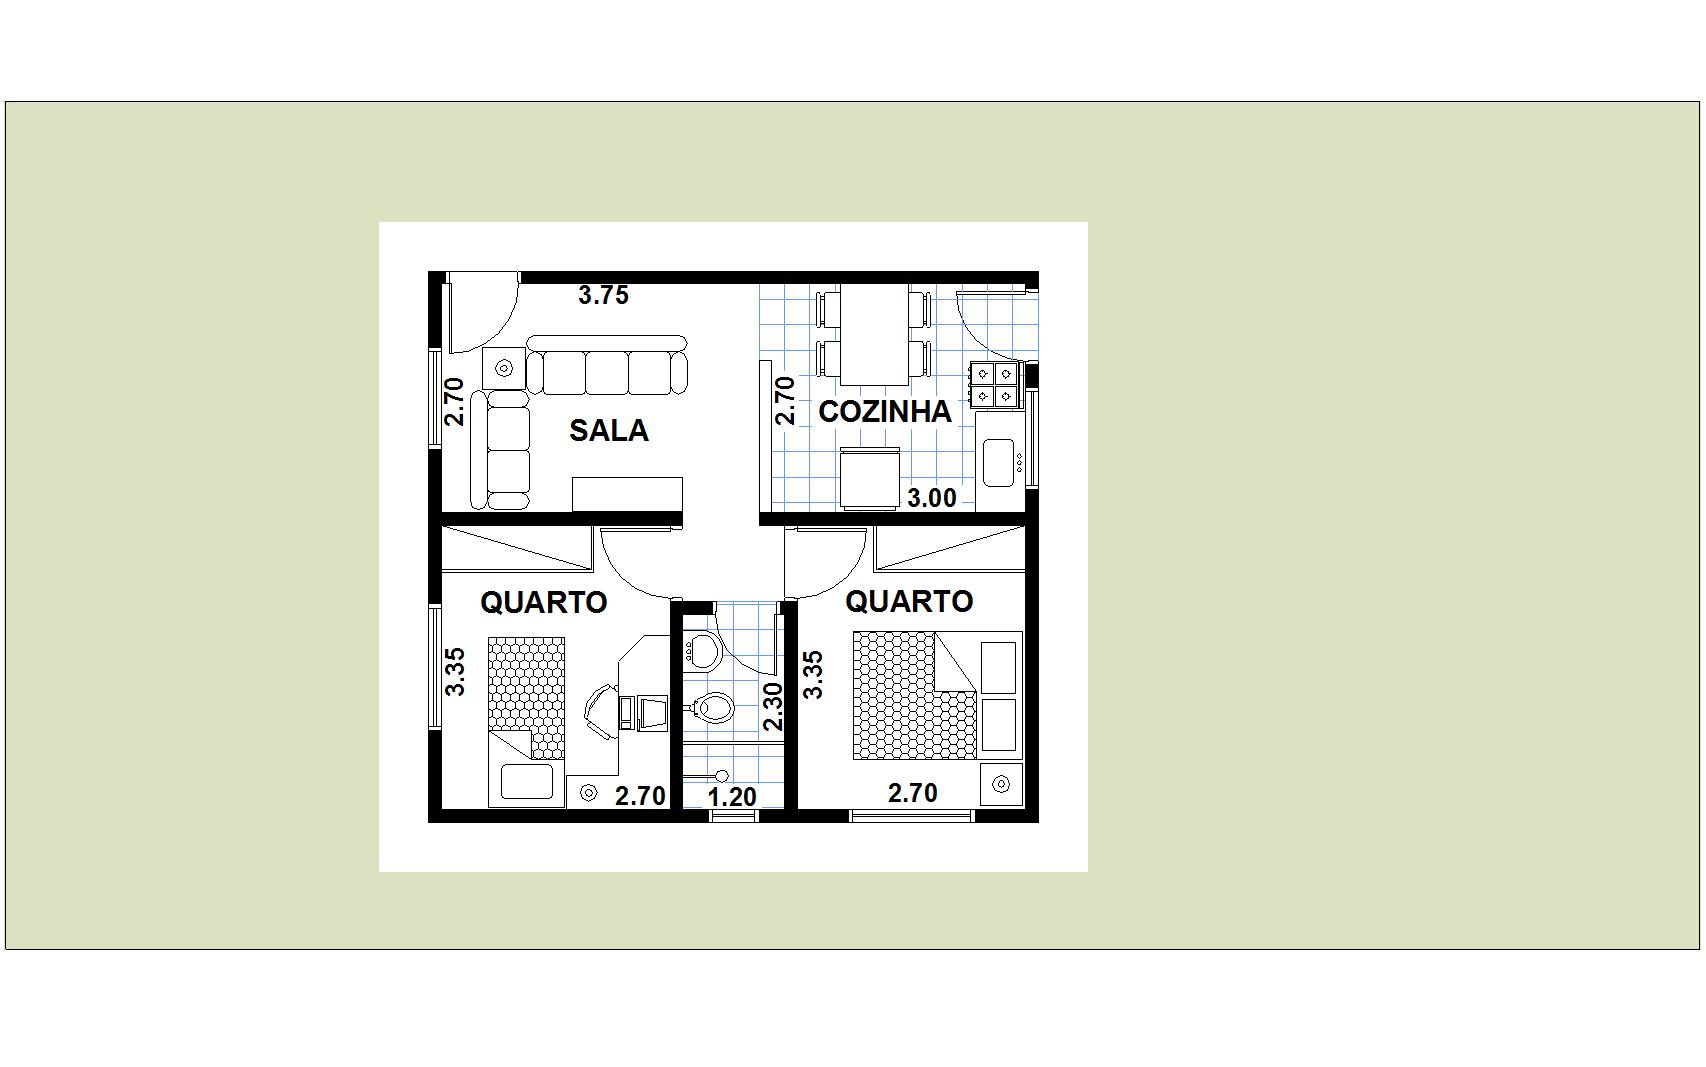 Planta de casas com 2 quarto, sala, cozinha e banheiro com quartos lado a lado